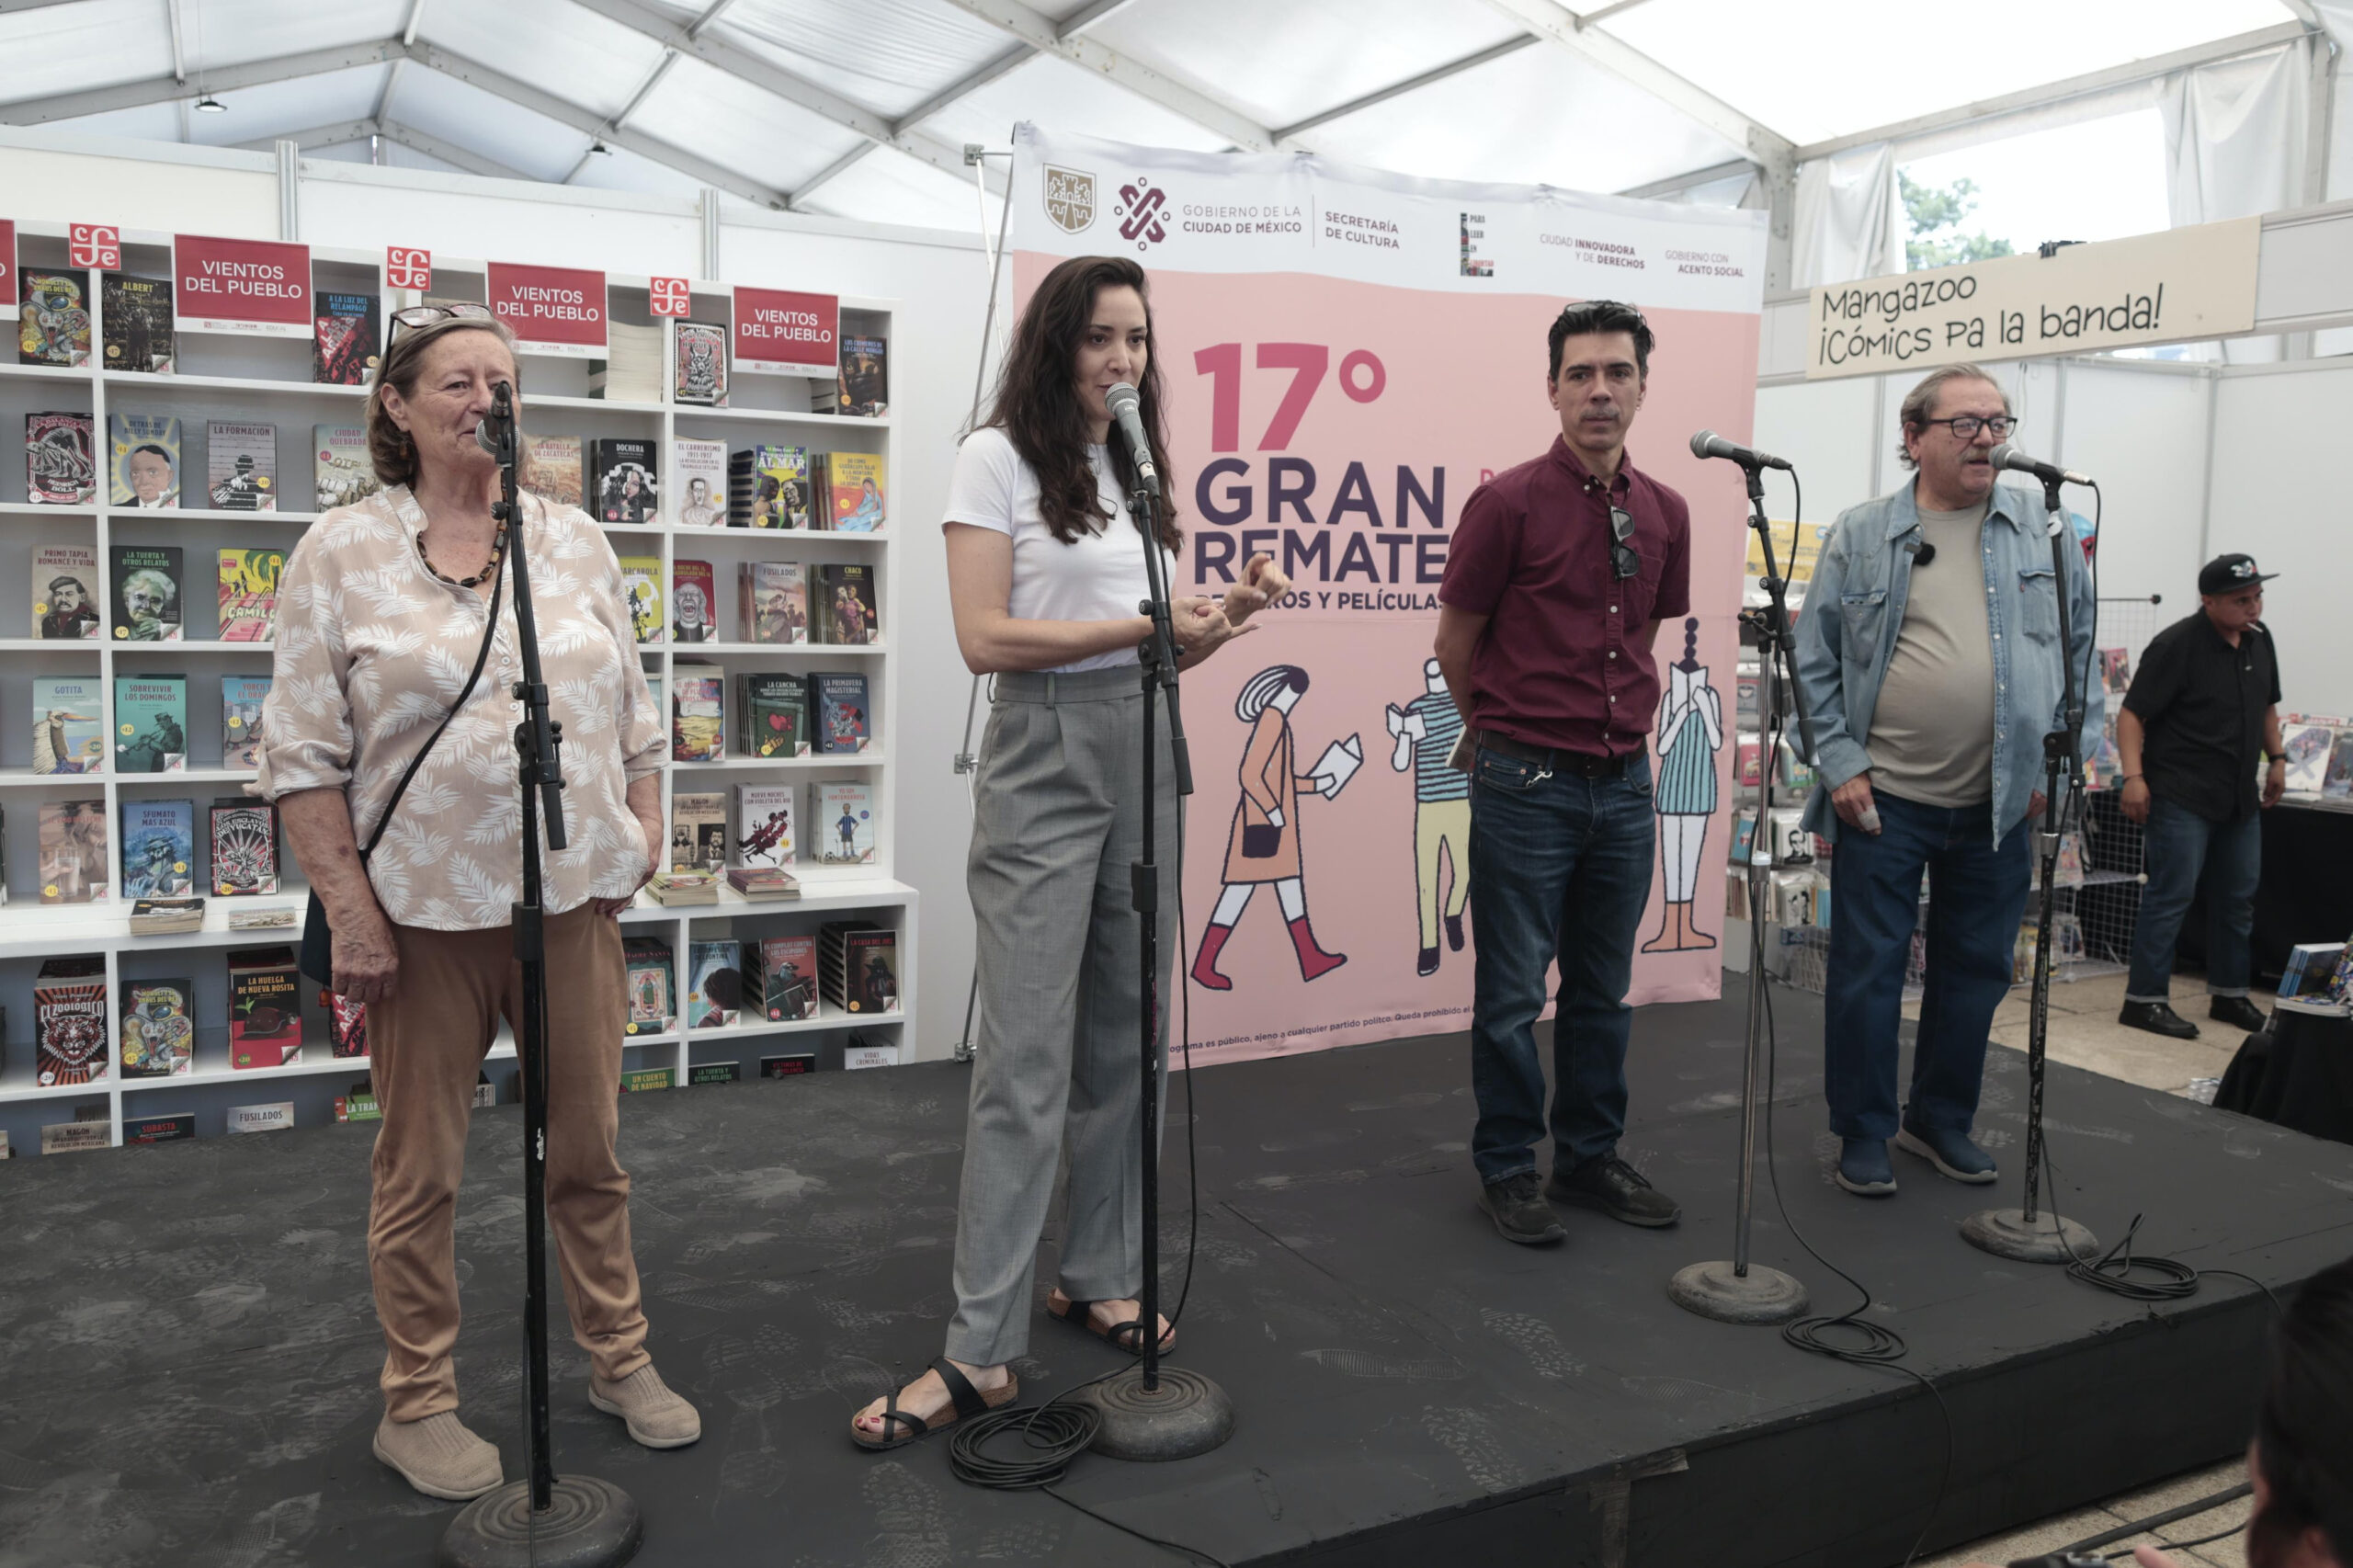 Inauguran edición 17 del Gran Remate de Libros y Películas en la Ciudad de México